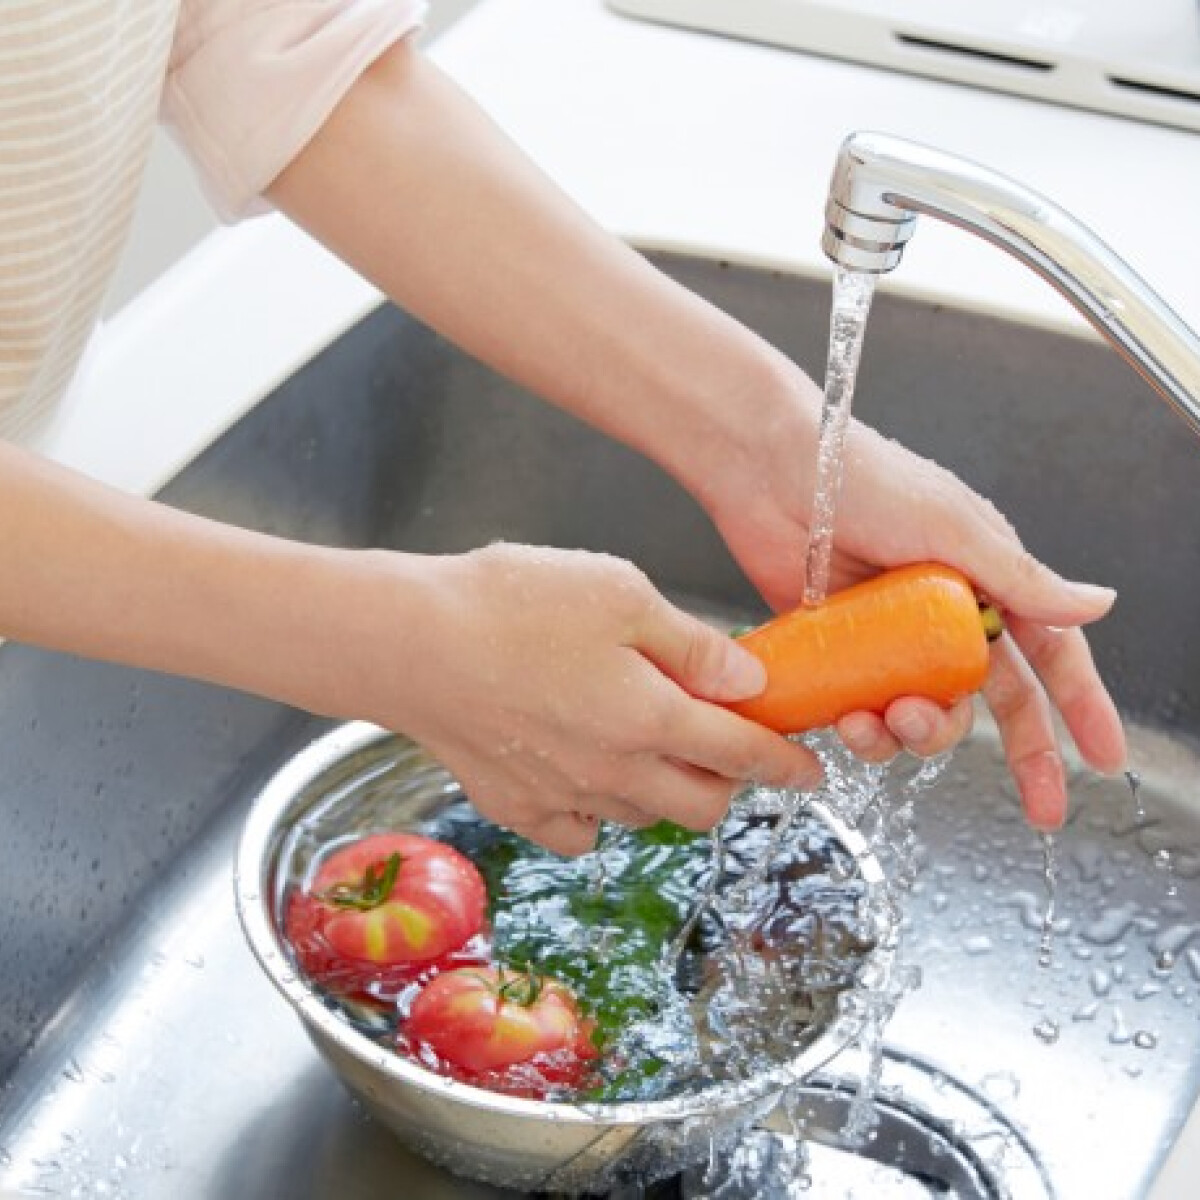 Így kell megmosni a zöldségeket, gyümölcsöket – Te helyesen tisztítod meg őket?